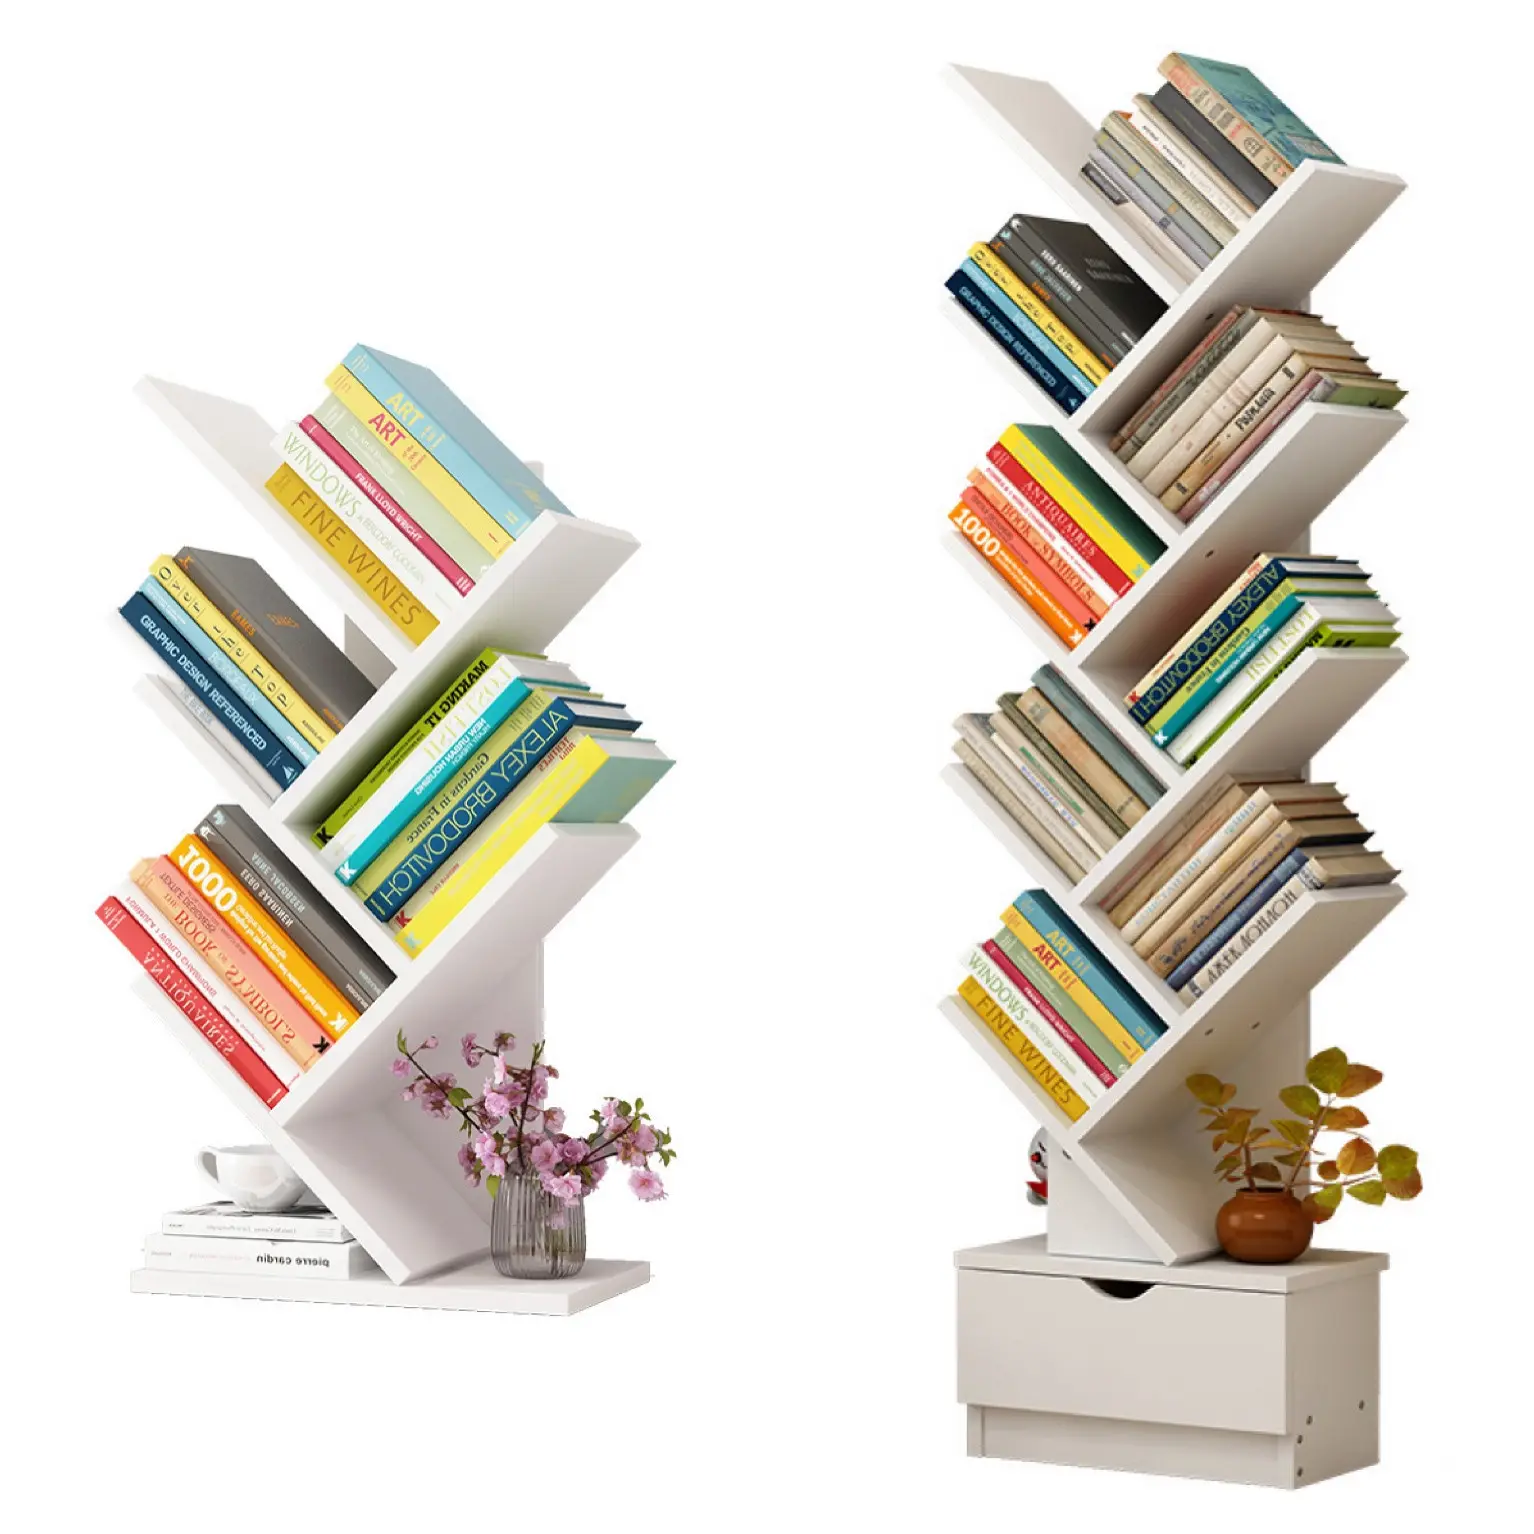 Toptan yaratıcı genişletilebilir ağaç şekilli kitaplık ahşap çocuk çocuk kitap rafı mobilya setleri kitaplık çocuklar için